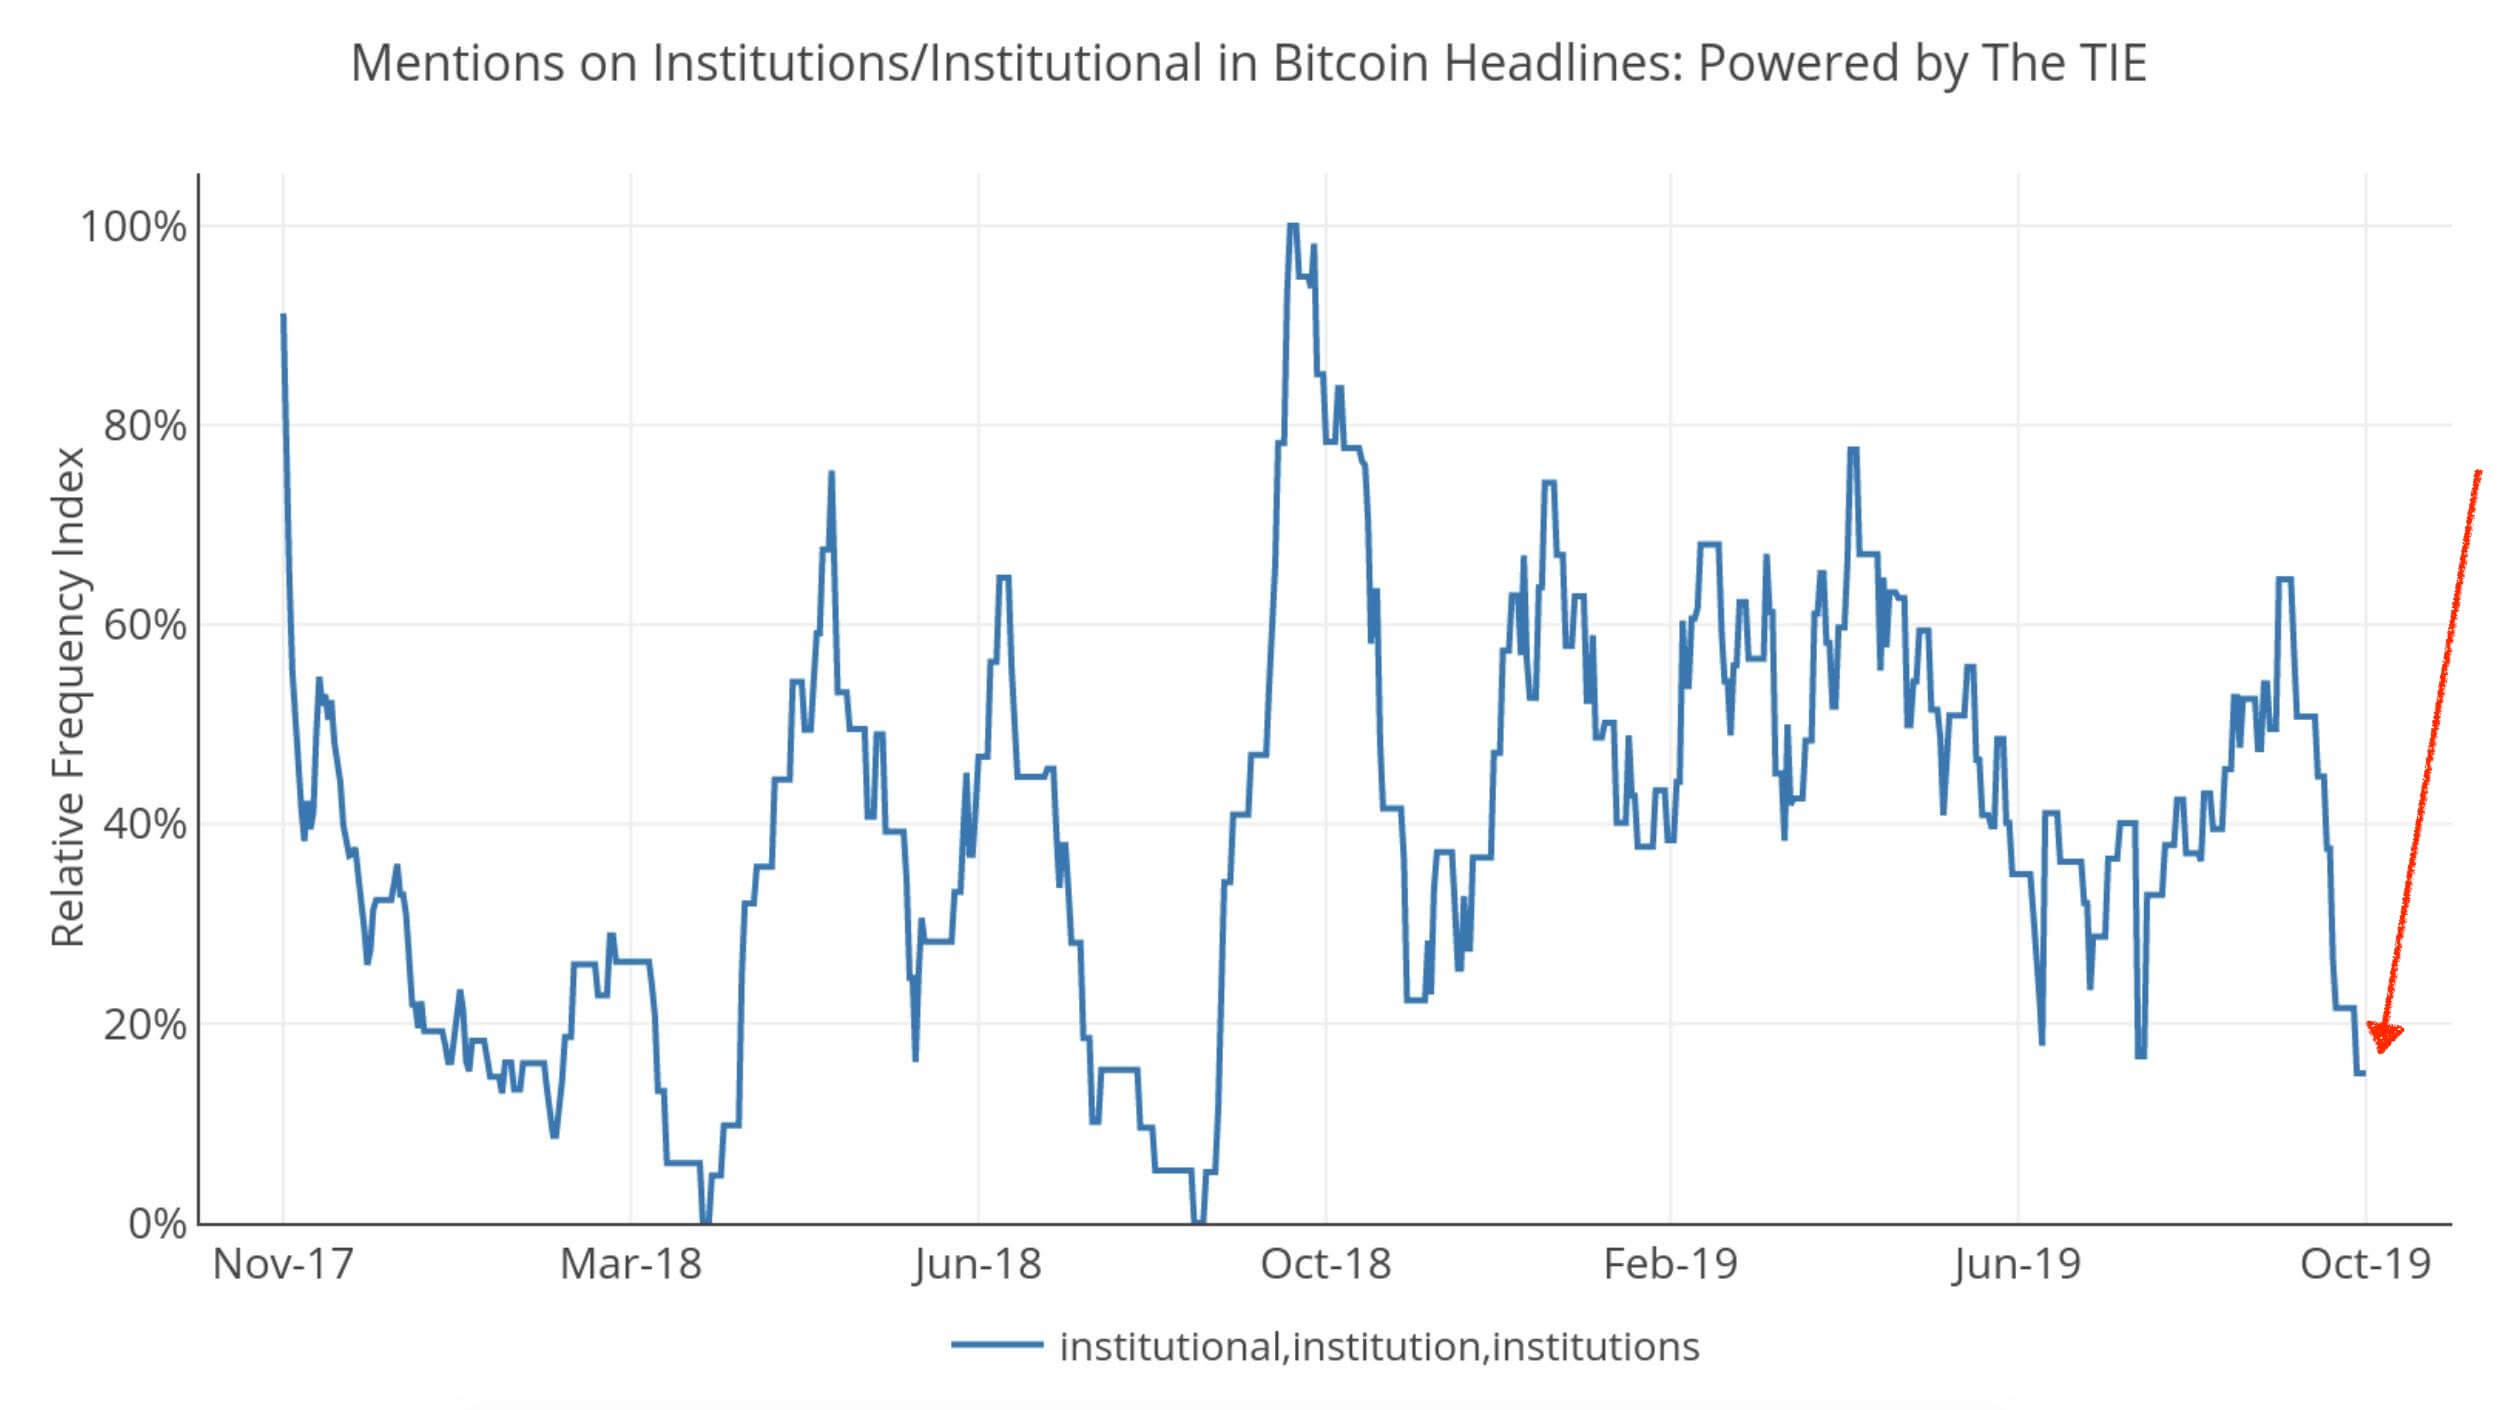 Об интересе институциональных инвесторов к Биткоину вспоминают всё реже. Показатель находится на минимуме за 2019 год. Источник: Твиттер. Фото.